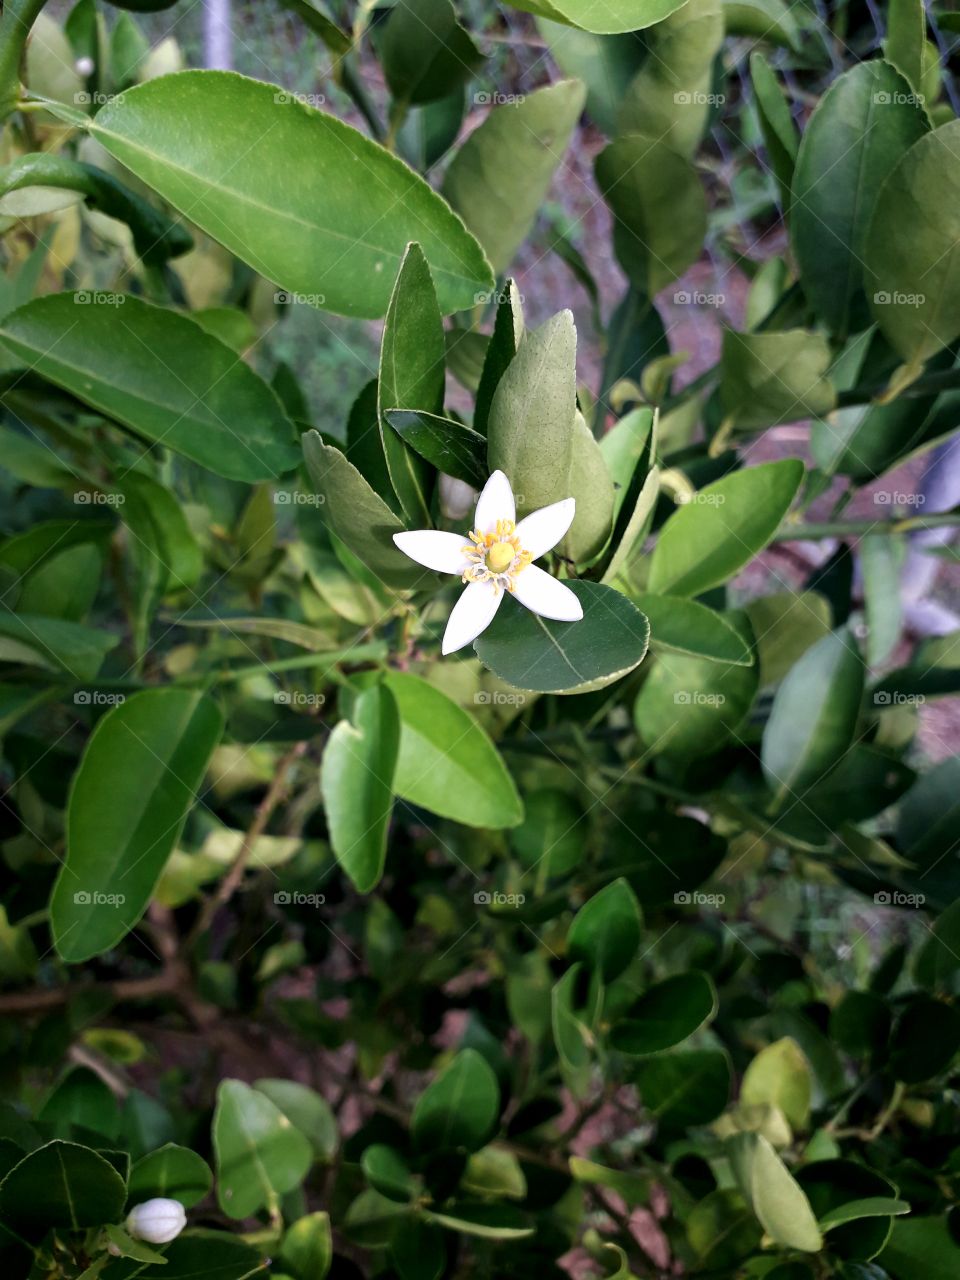 Lemon tree flower